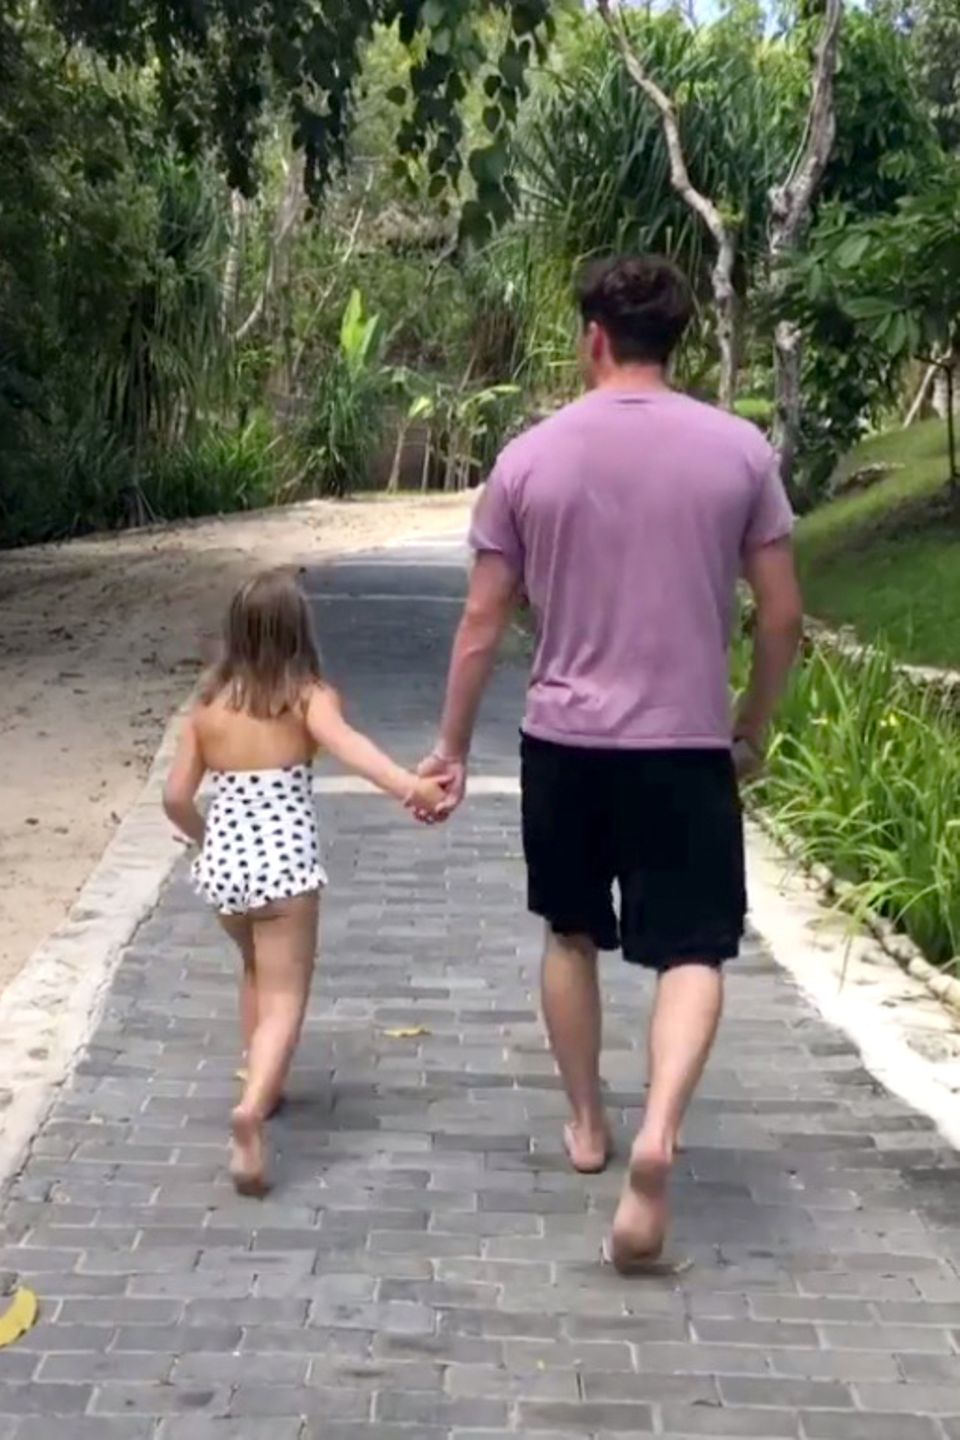 16. August 2018  Hand in Hand hüpfen Harper und Brooklyn den Weg entlang. "Harper liebt ihren großen Bruder so sehr" schreibt Mama Victoria zu diesem süßen Post auf Instagram. 